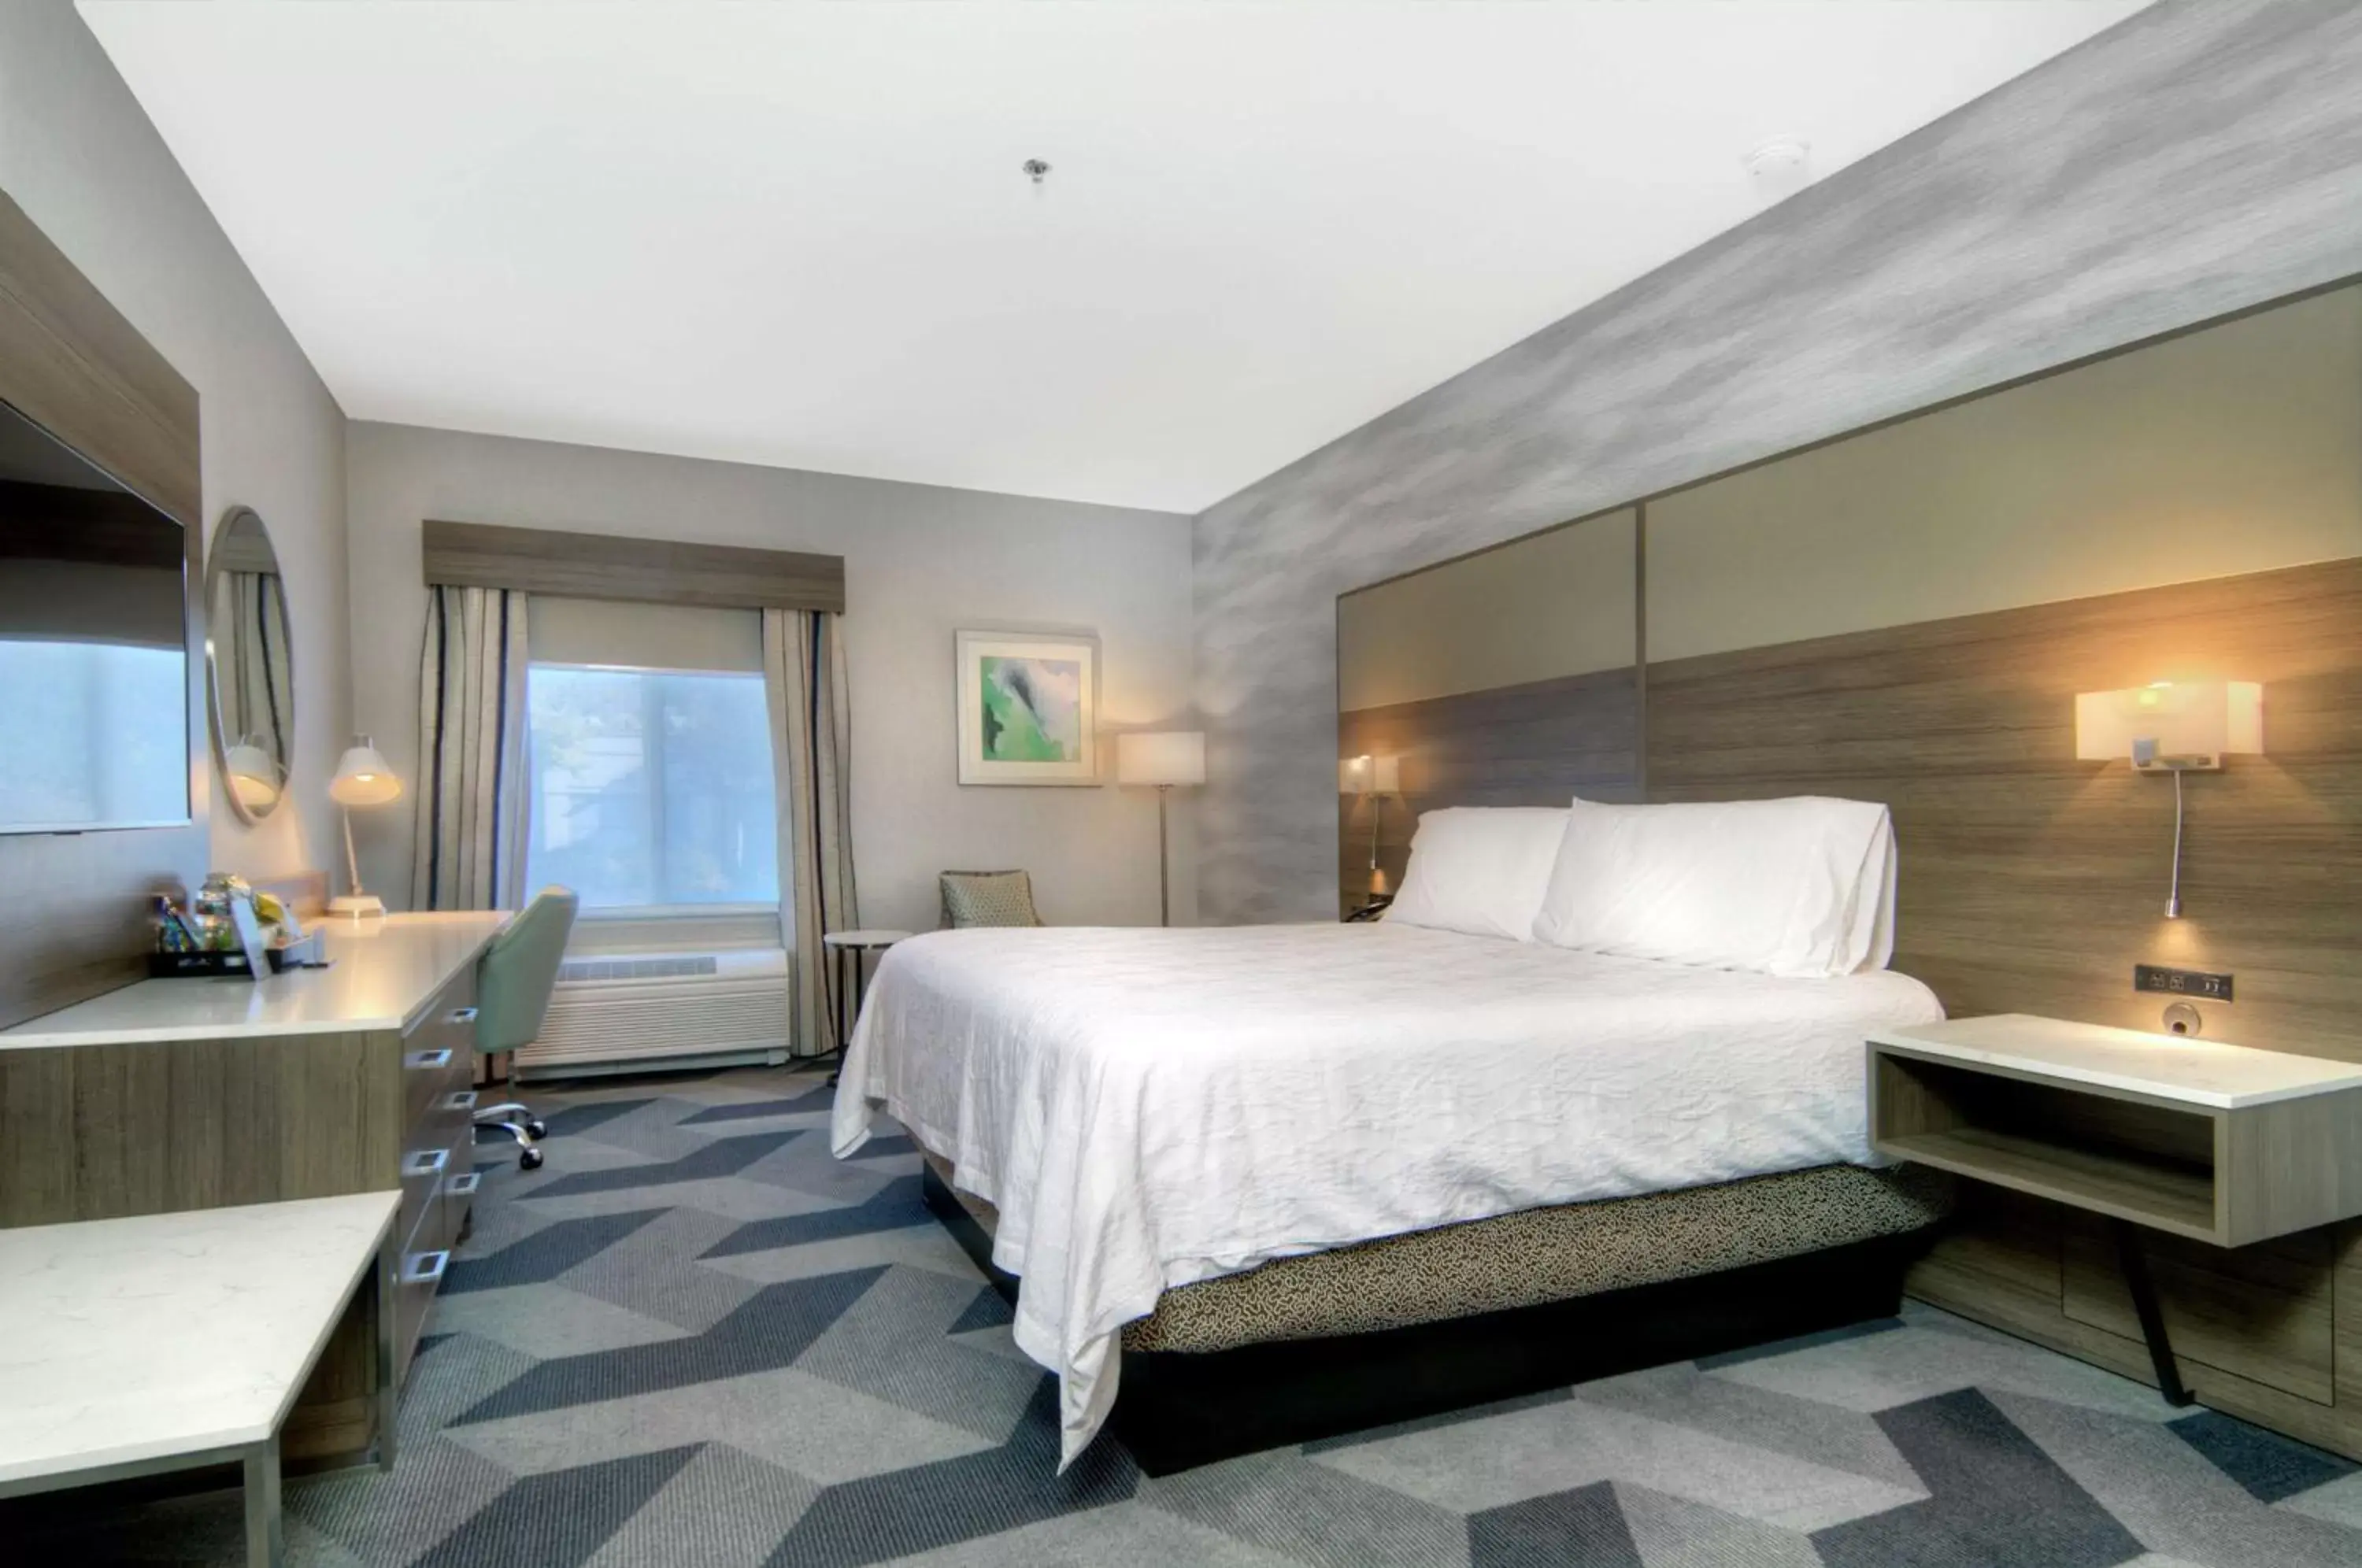 Premium King Room in Hilton Garden Inn Livermore